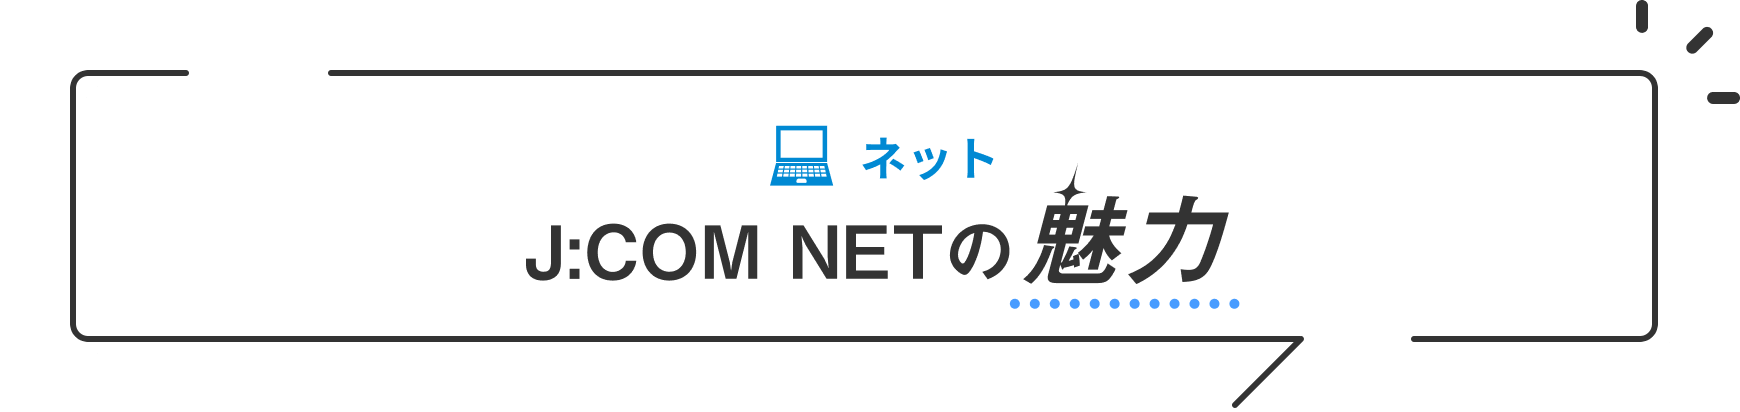 ネット J:COM NETの魅力